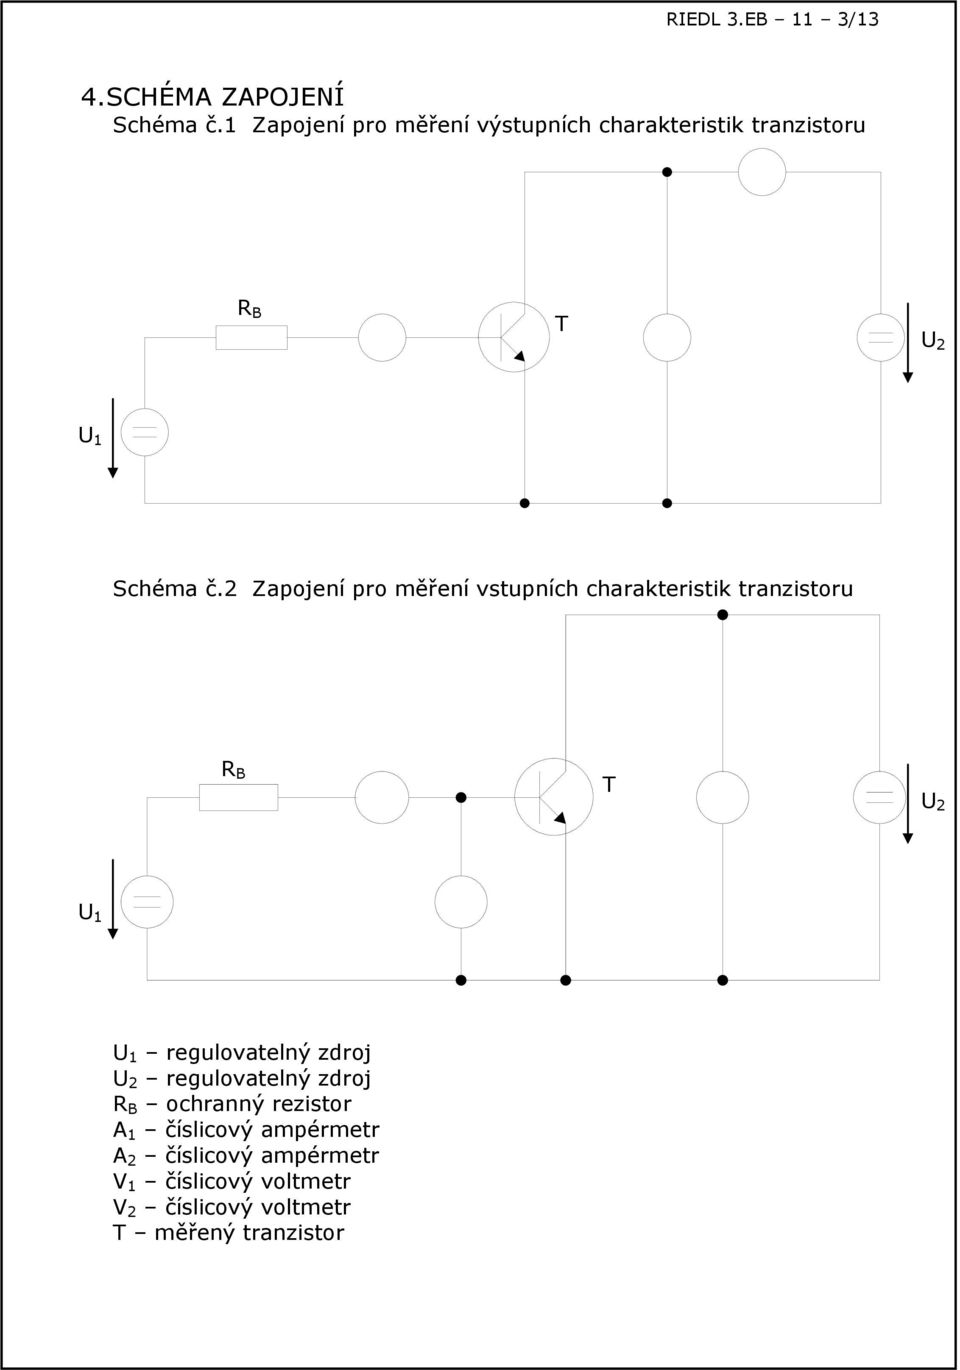 2 Zapojení pro měření vstupních charakteristik tranzistoru R B T 2 1 1 regulovatelný zdroj 2